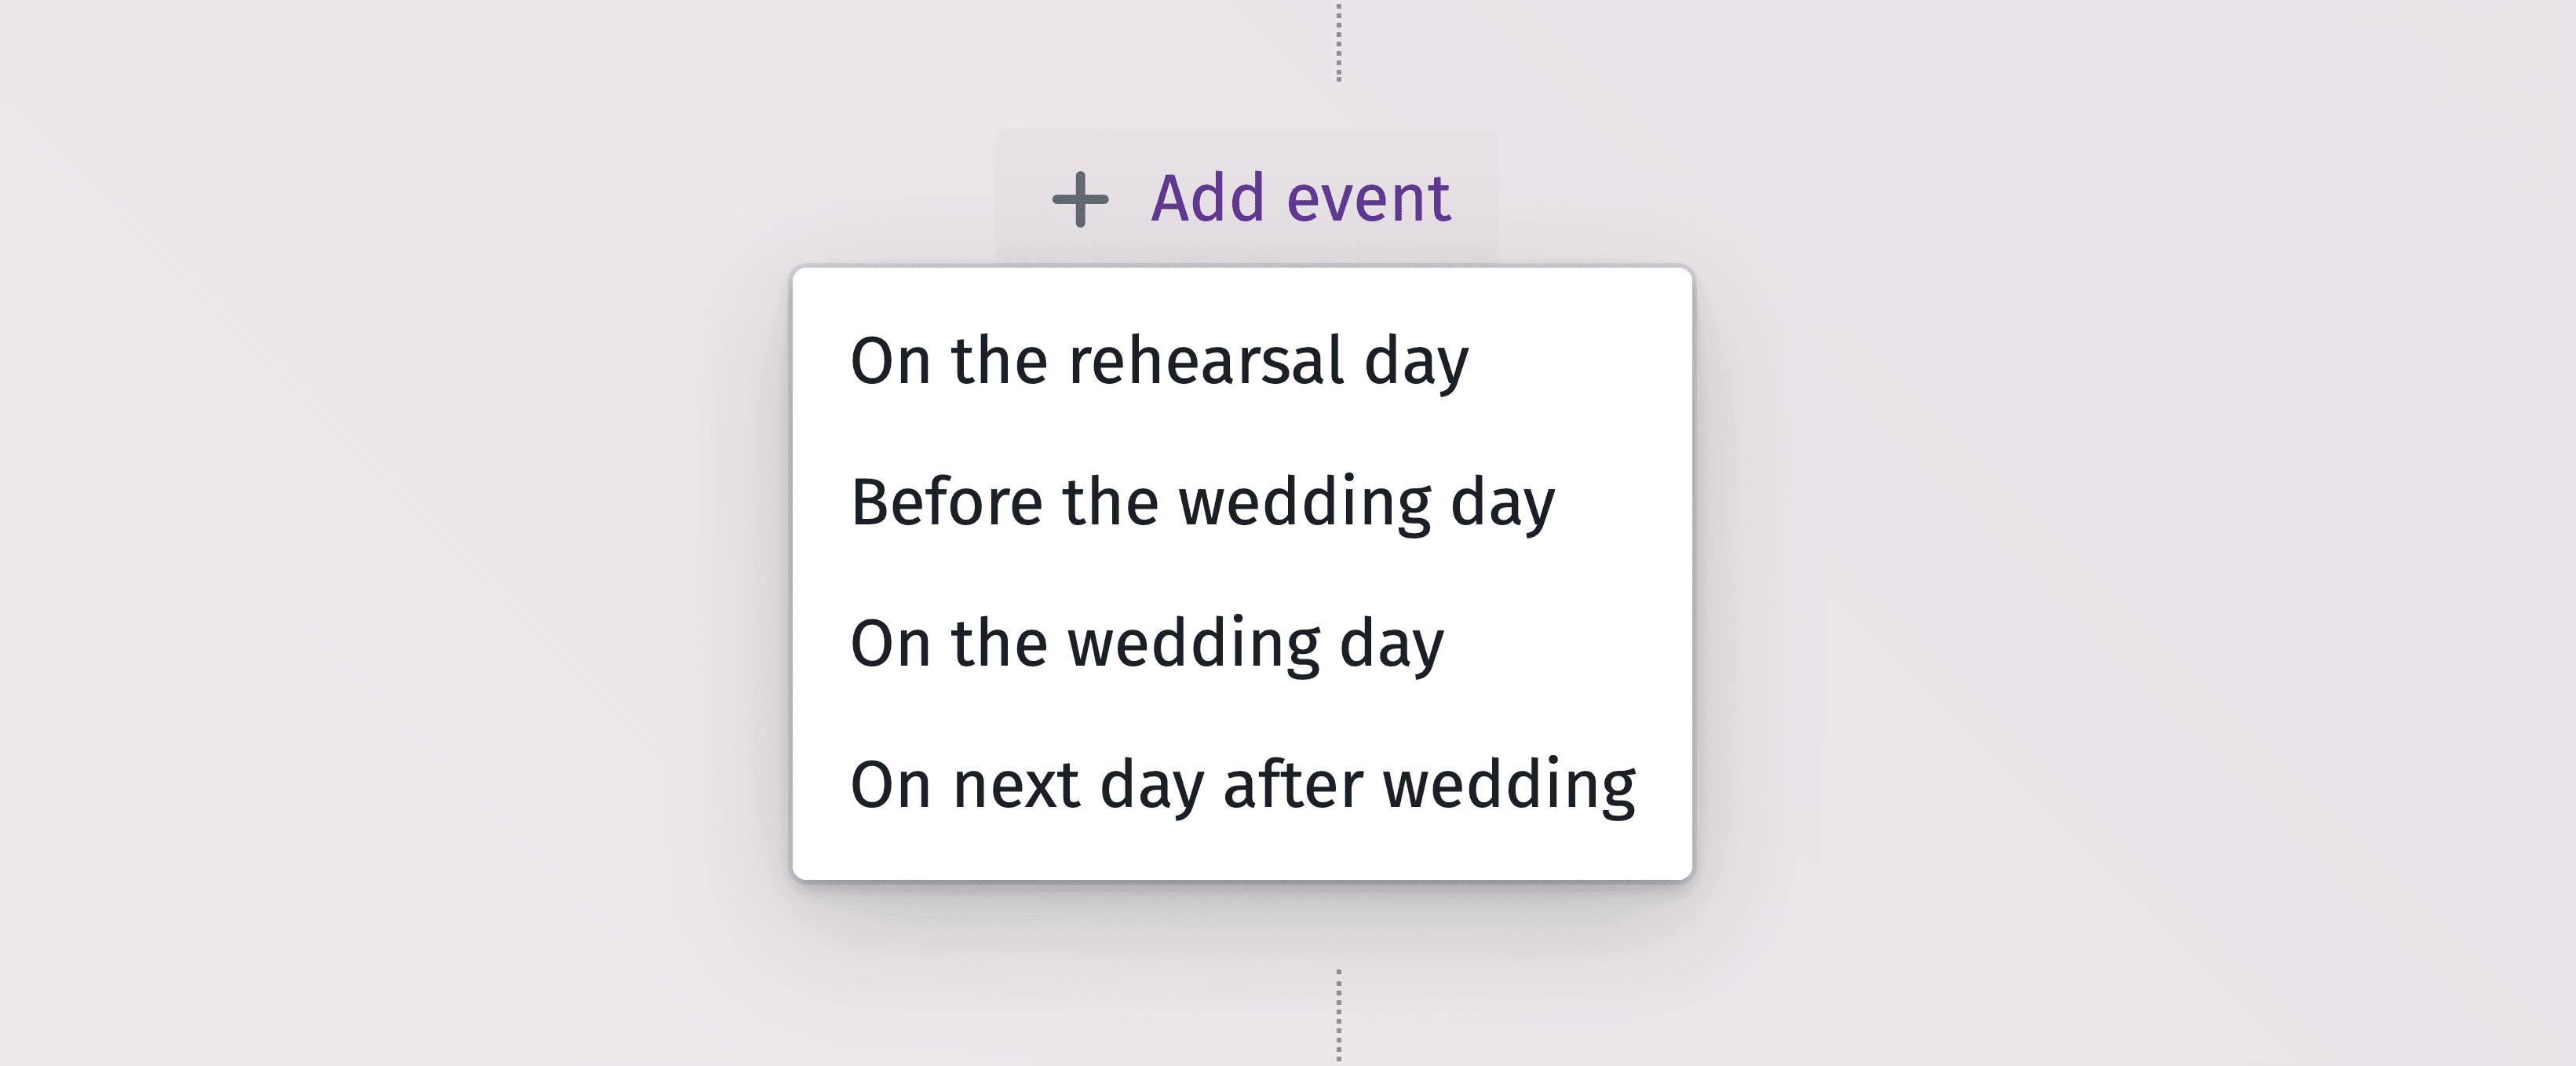 Grafico dettagliato della timeline per pianificare in modo efficiente ogni momento del giorno del matrimonio